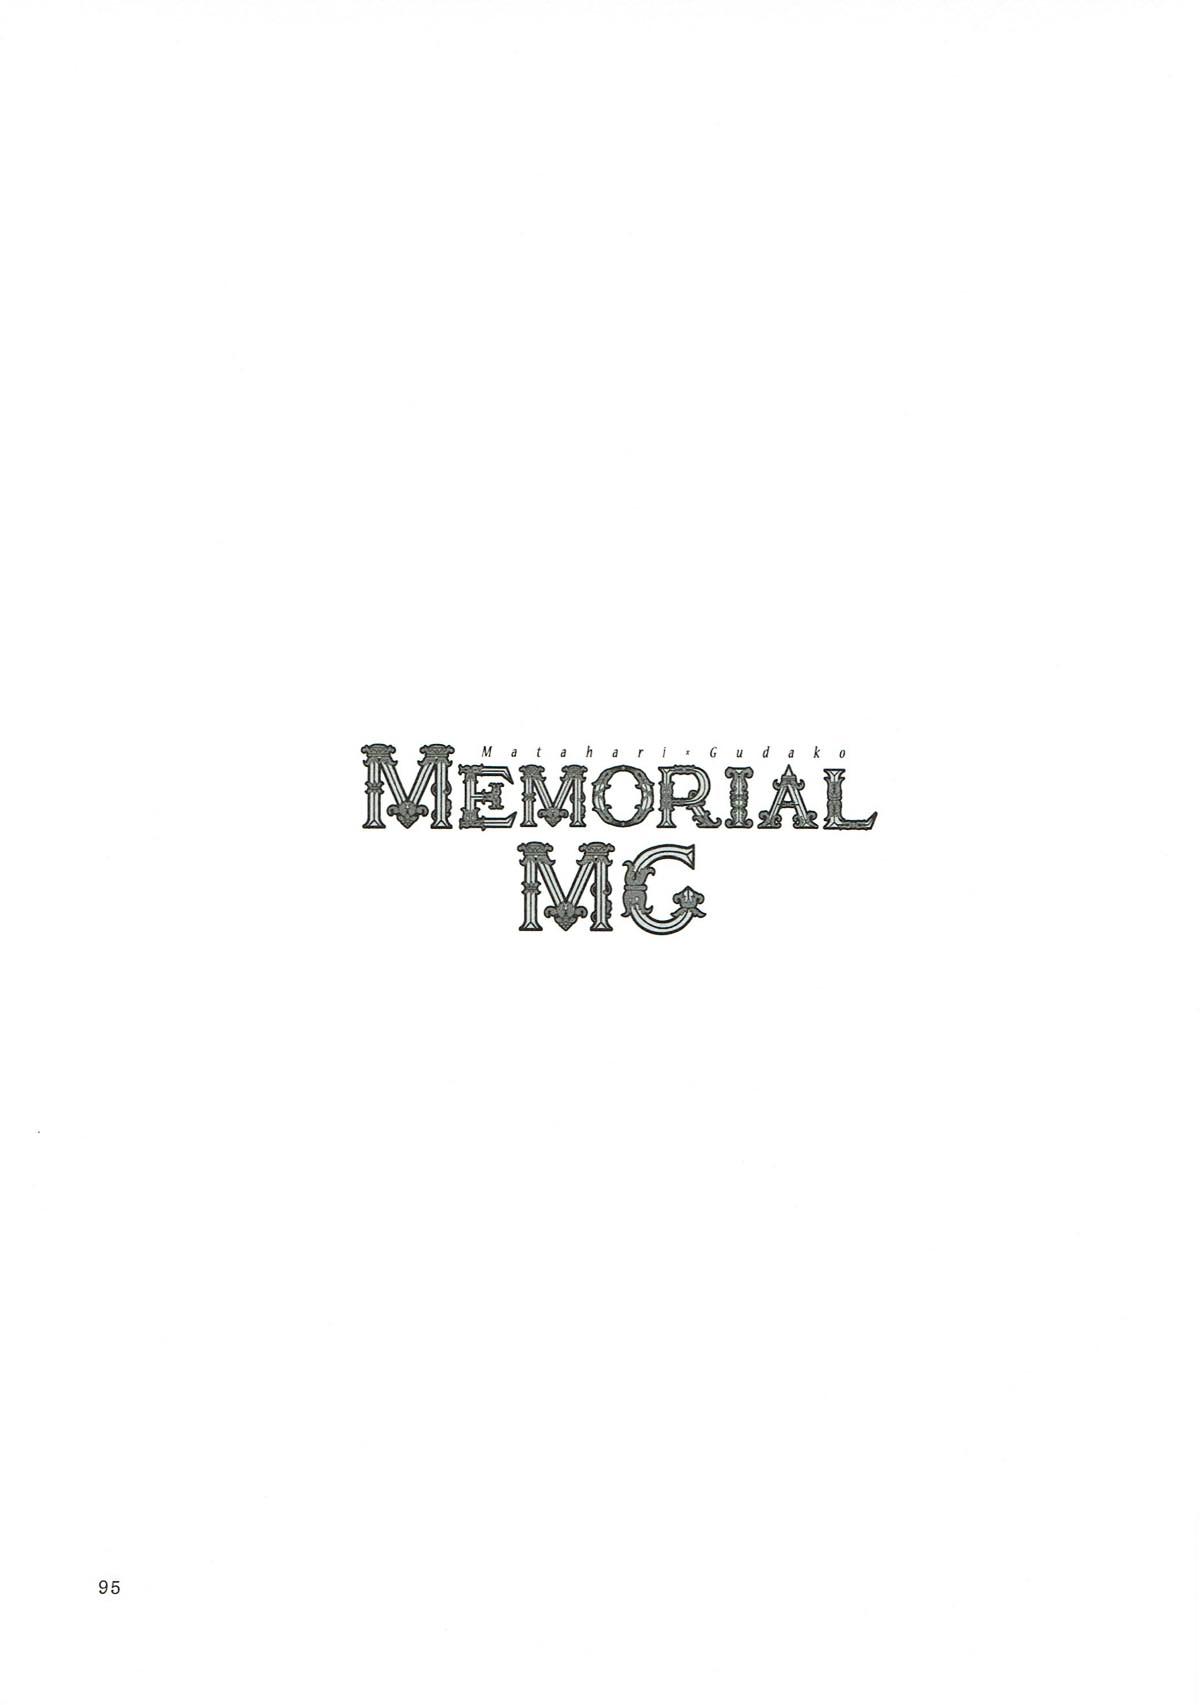 MEMORIAL MG 94